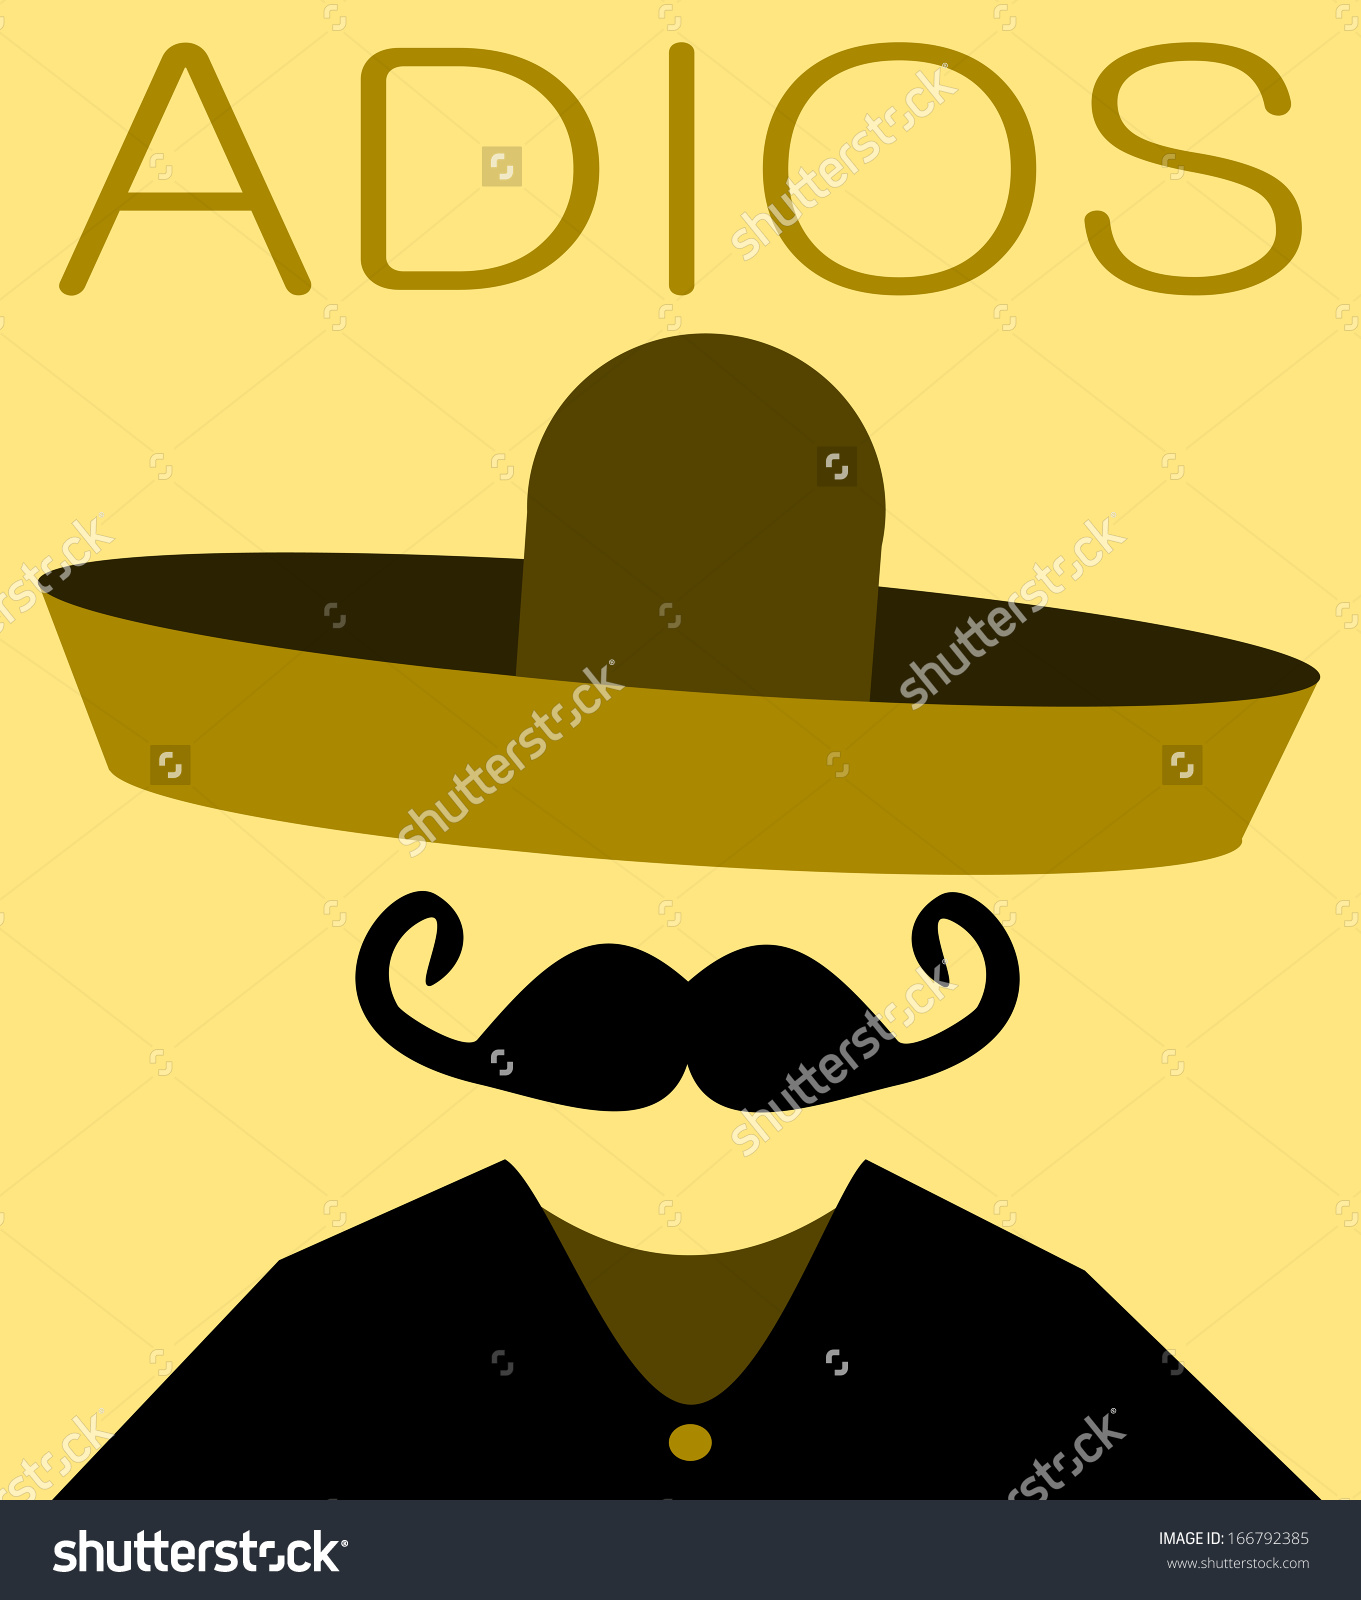 Адьес амигос. Адиос человек. Картина Адьос. Adios muchachos надпись.